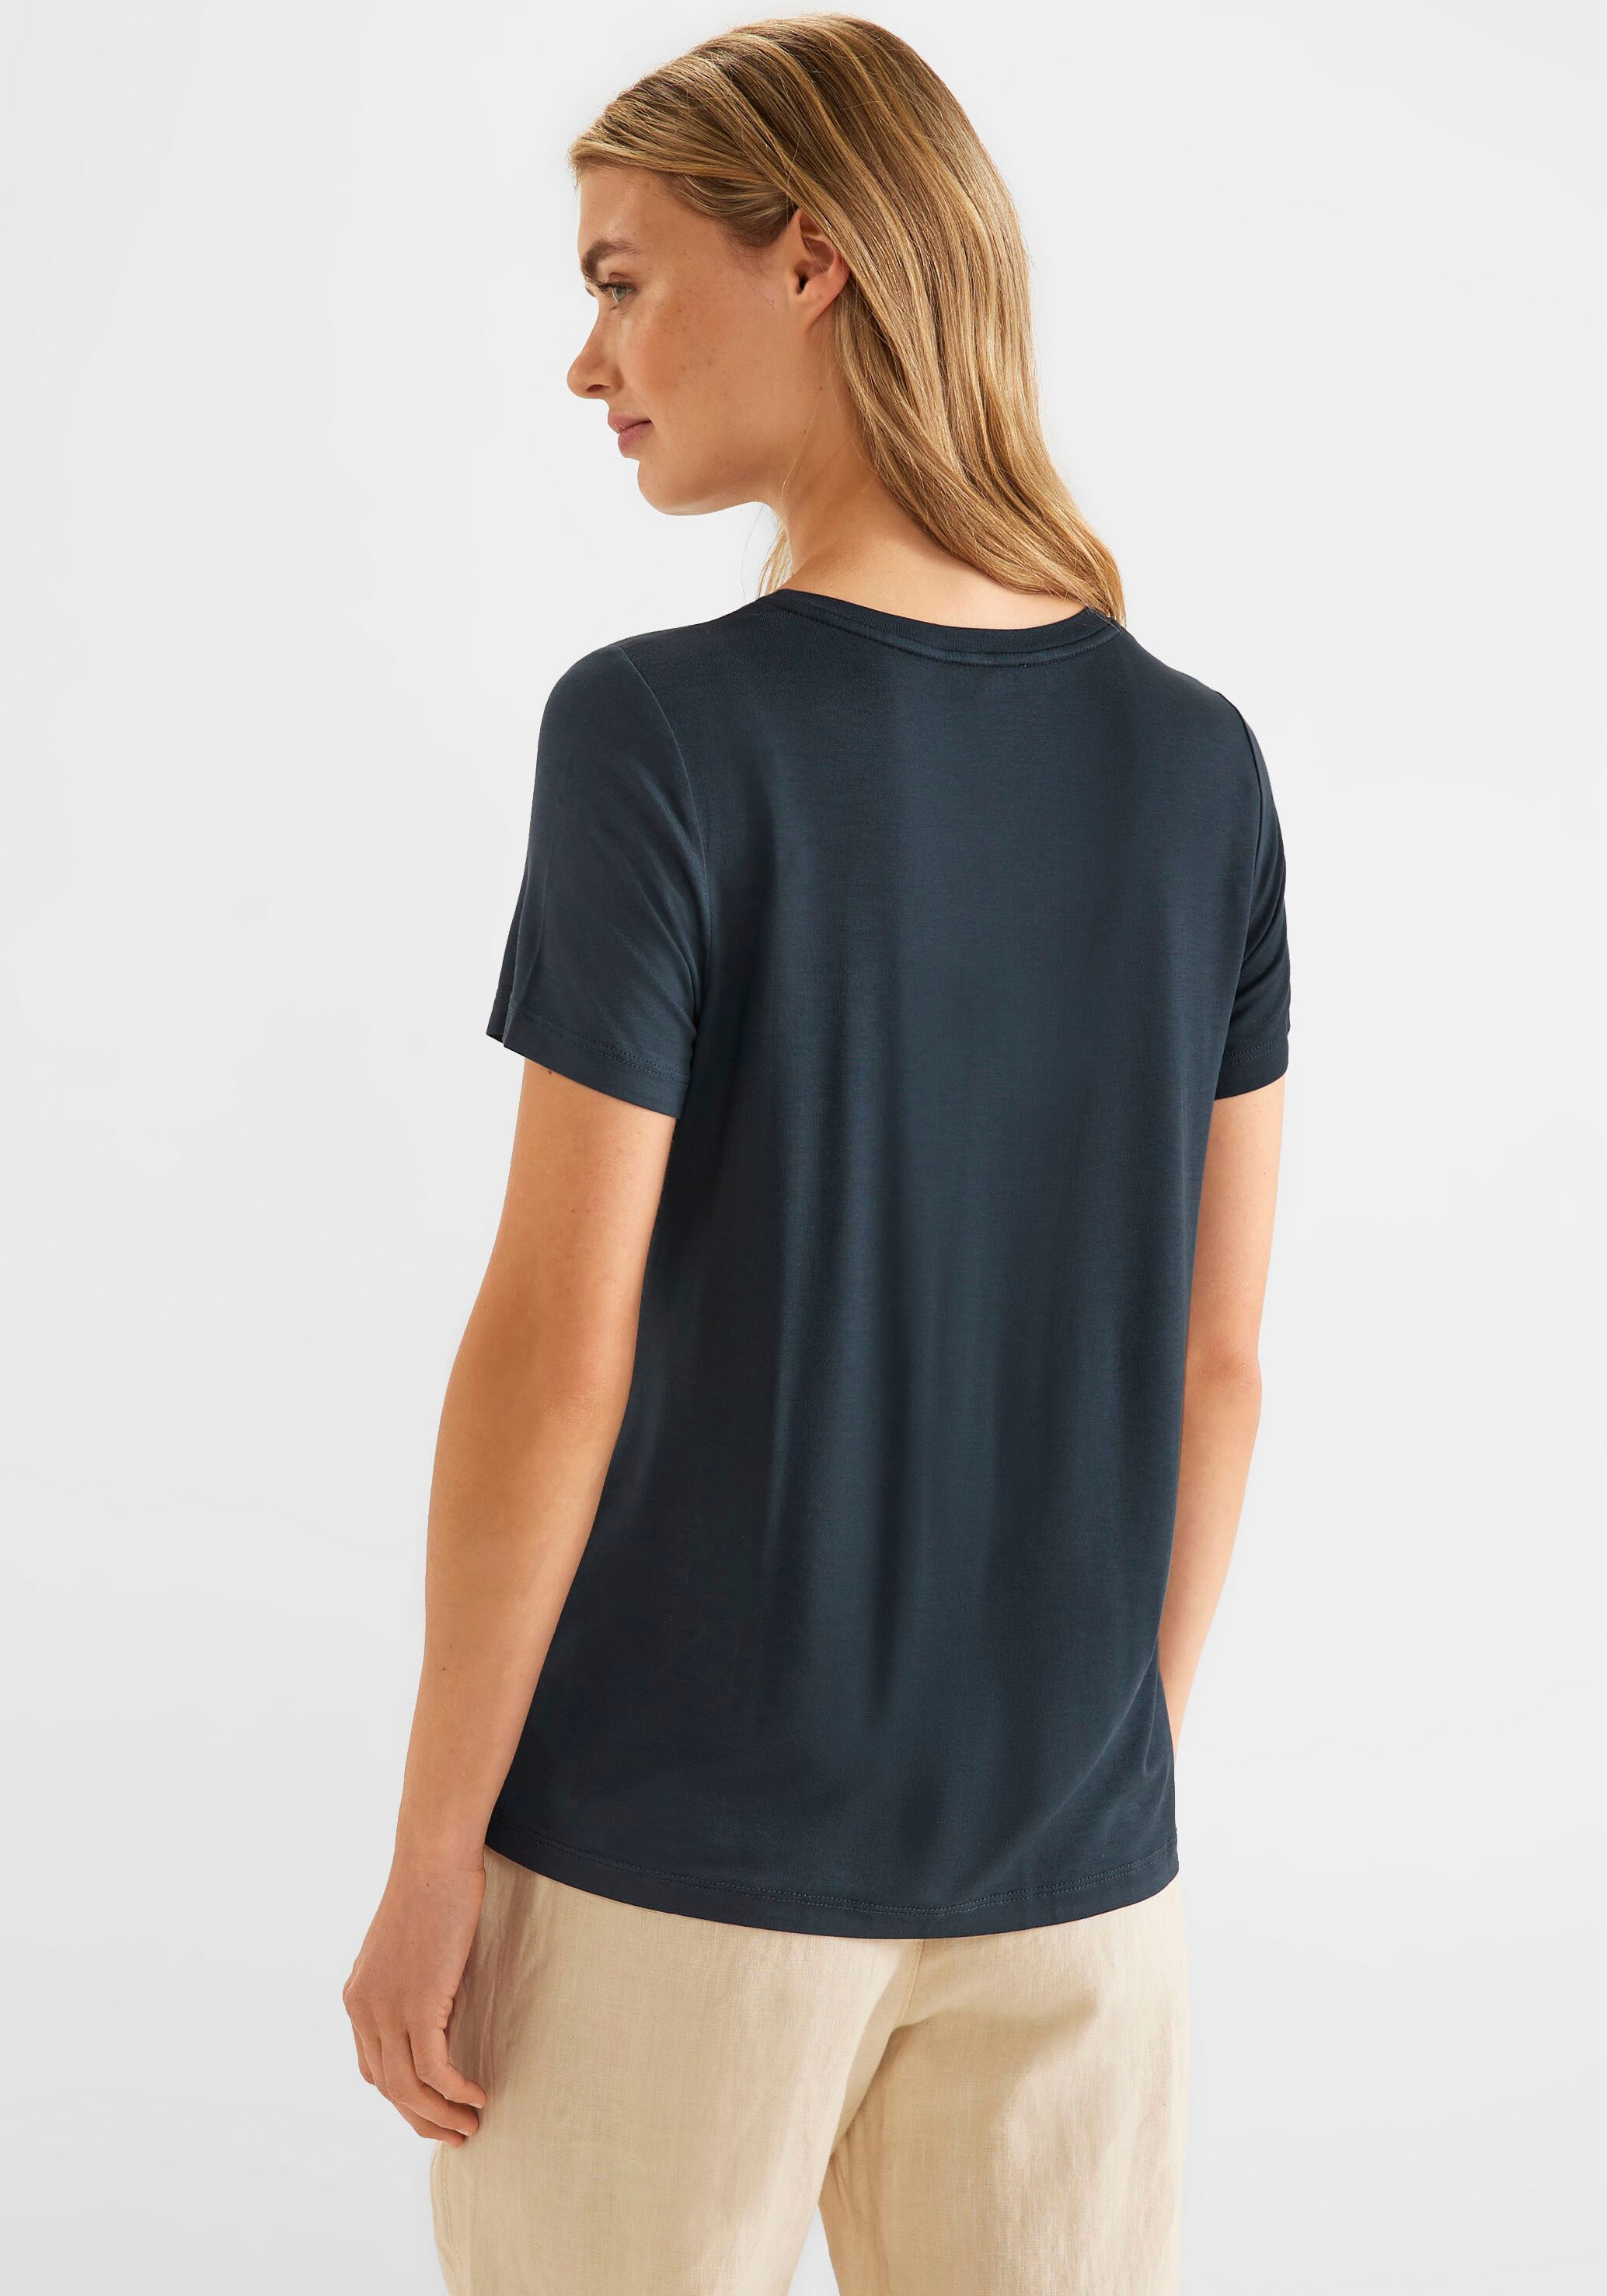 T-Shirt, online STREET kaufen bei Schimmerdetails Schweiz ONE und Wording Jelmoli-Versand mit